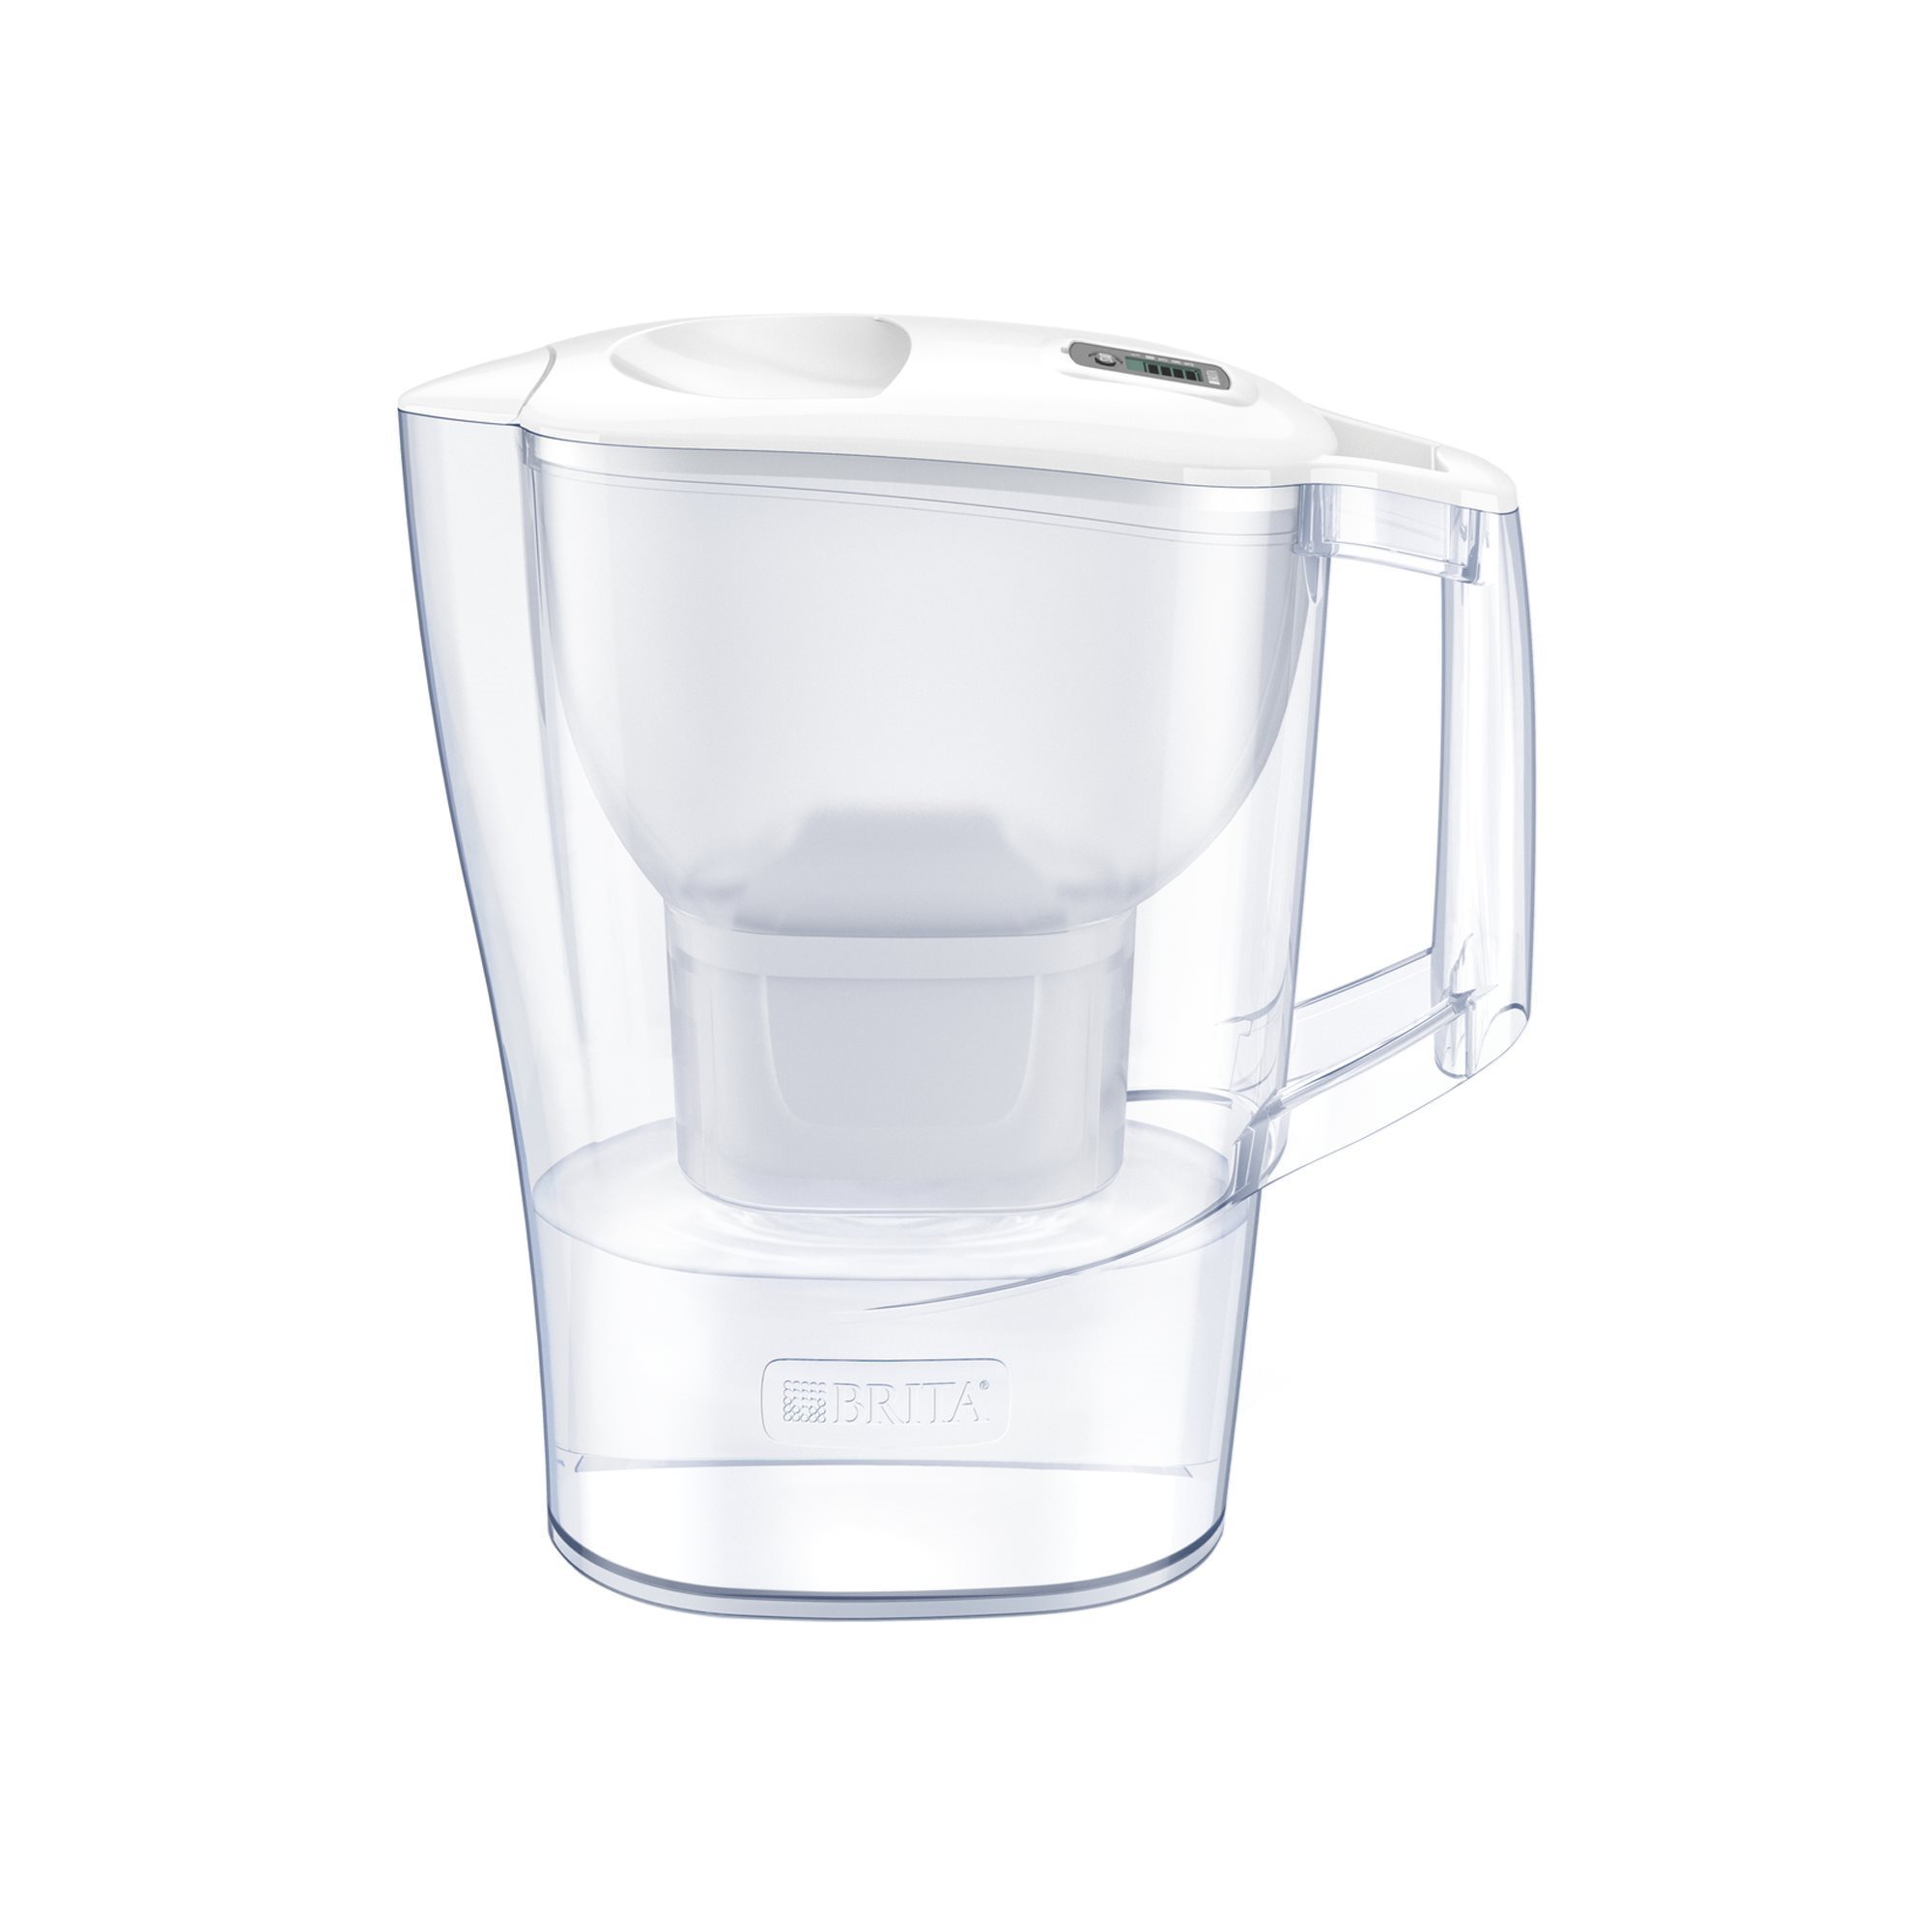 BRITA Aluna 2.4 L filter jug Maxtra+ | KitchenShop